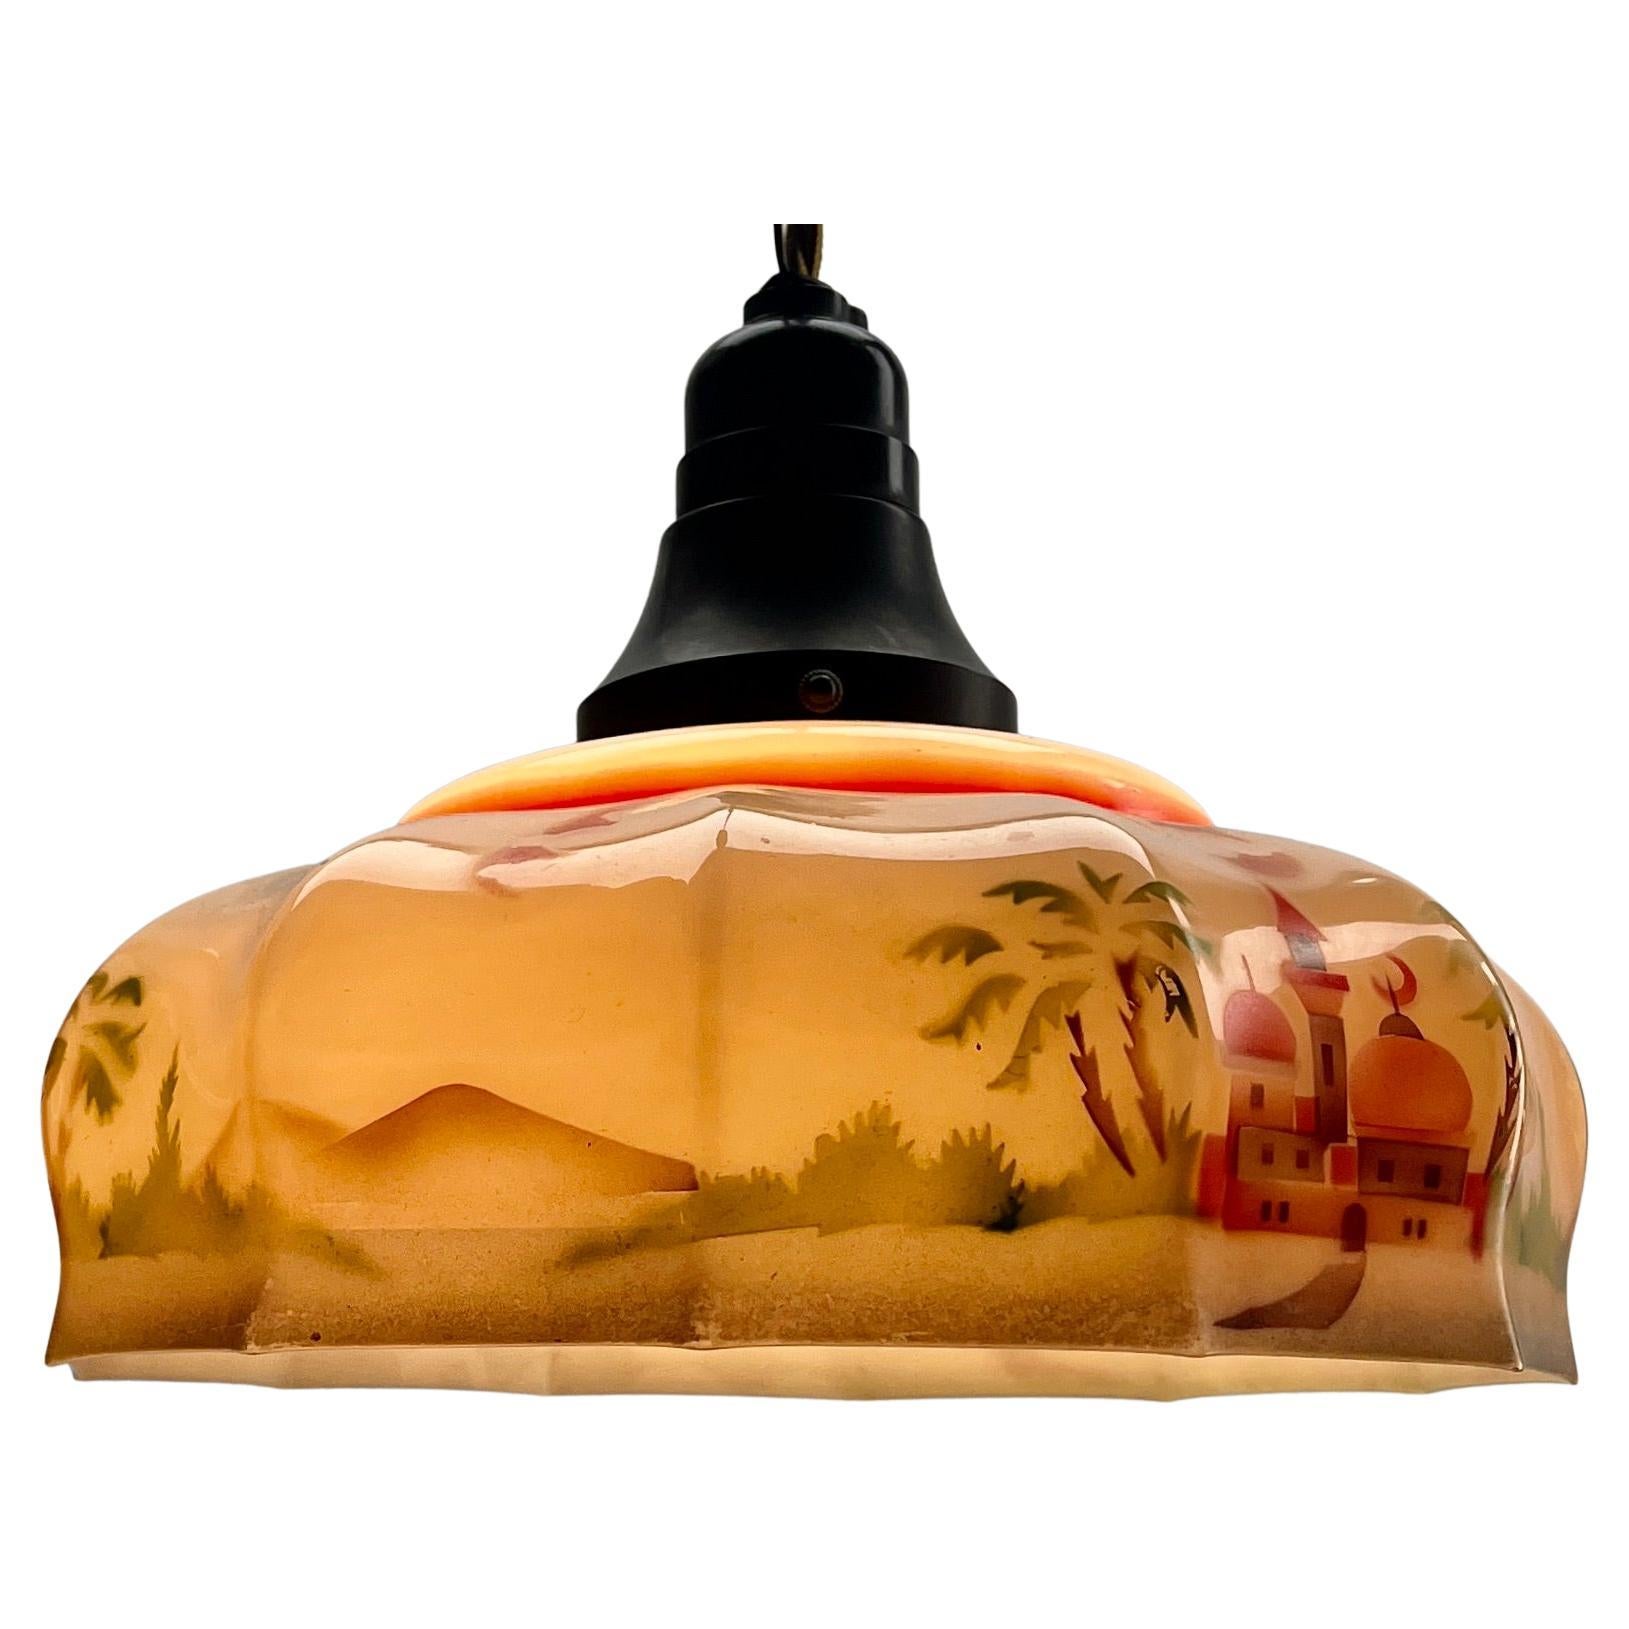 Belgian Art Deco Ceiling Lamp Bakelite fitting E27 Scailmont Belgium Glass Shade, 1930s For Sale